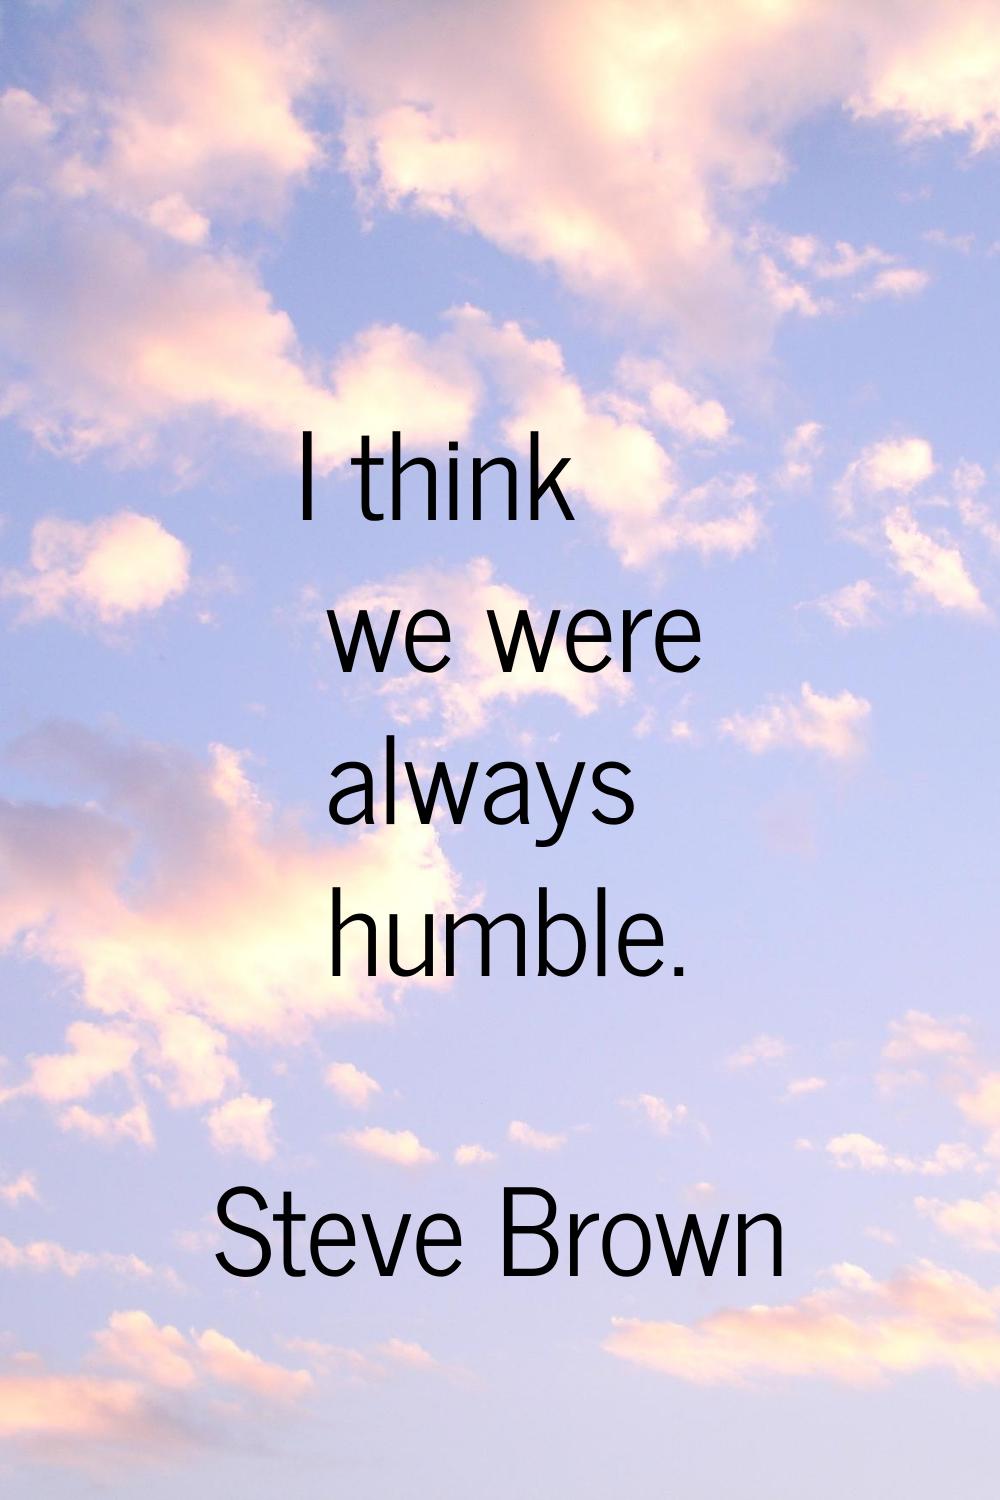 I think we were always humble.